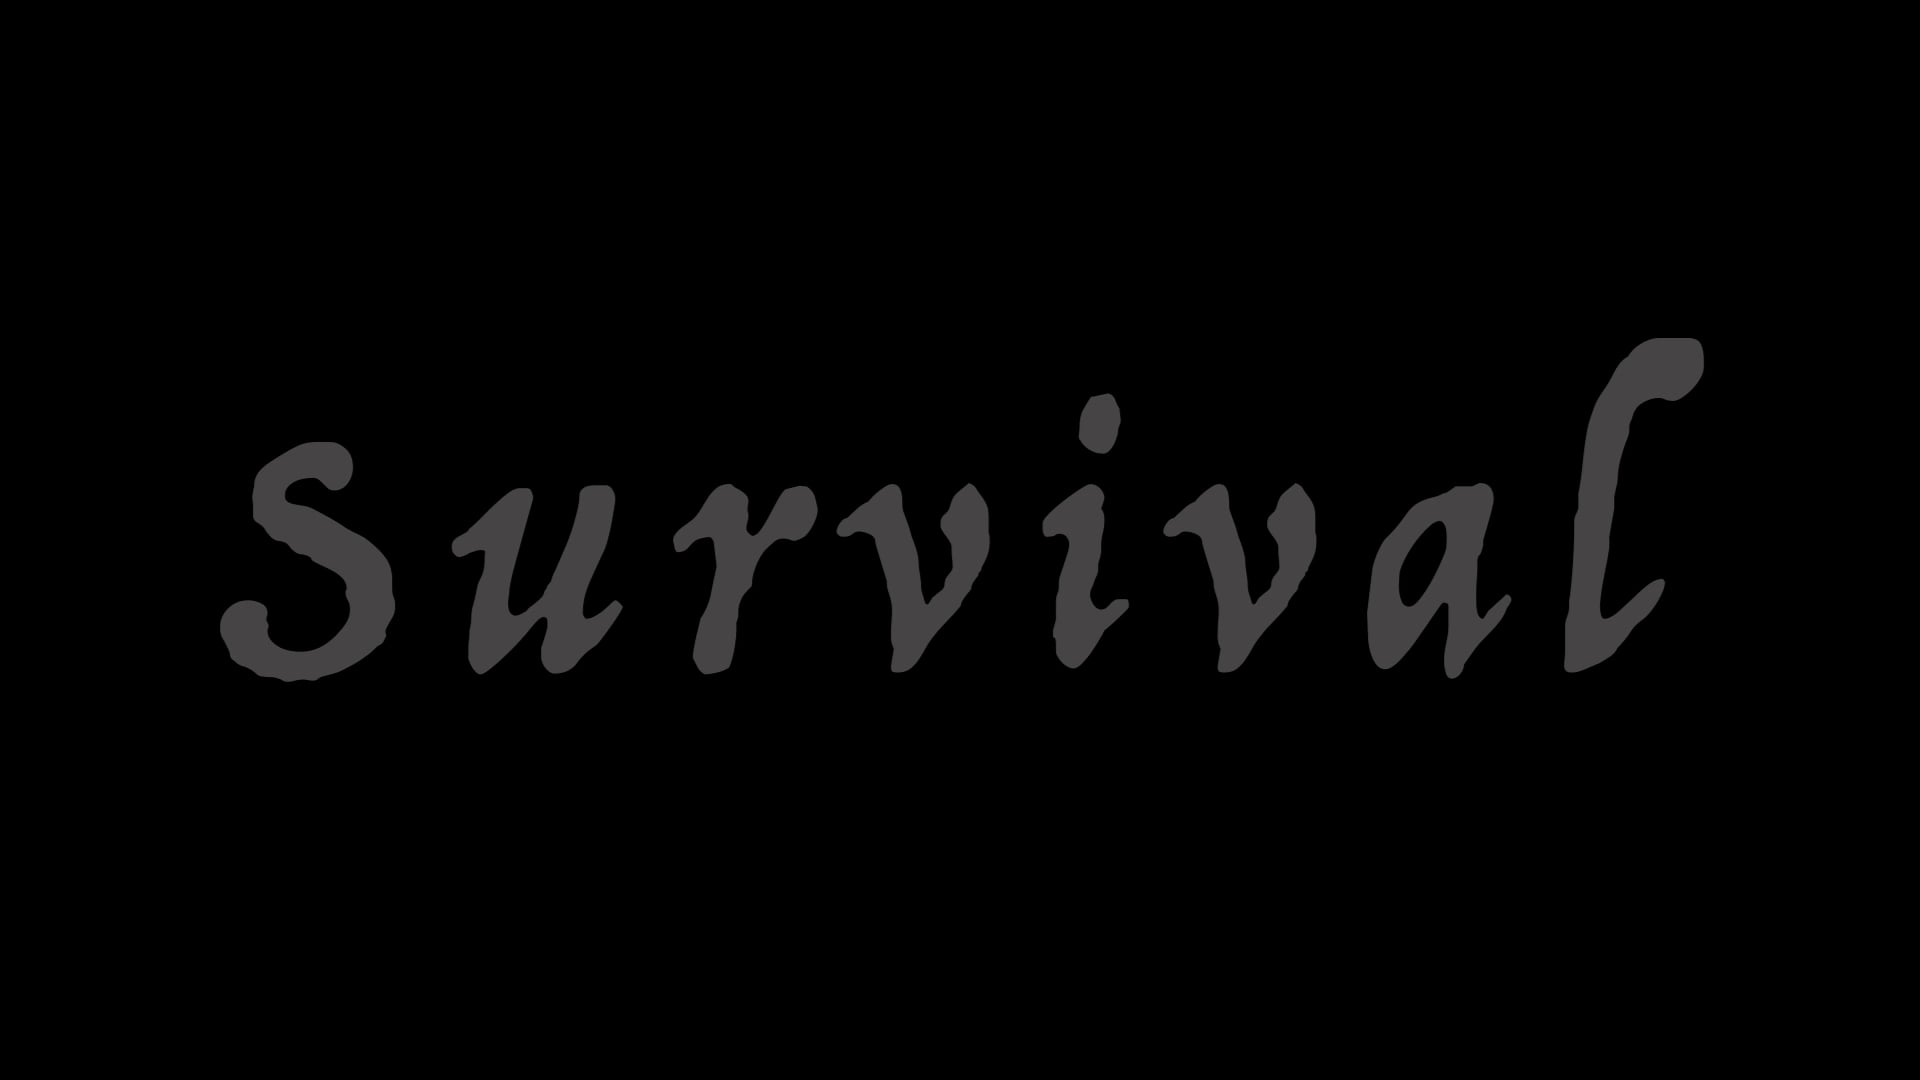 Survival (Dance Video)